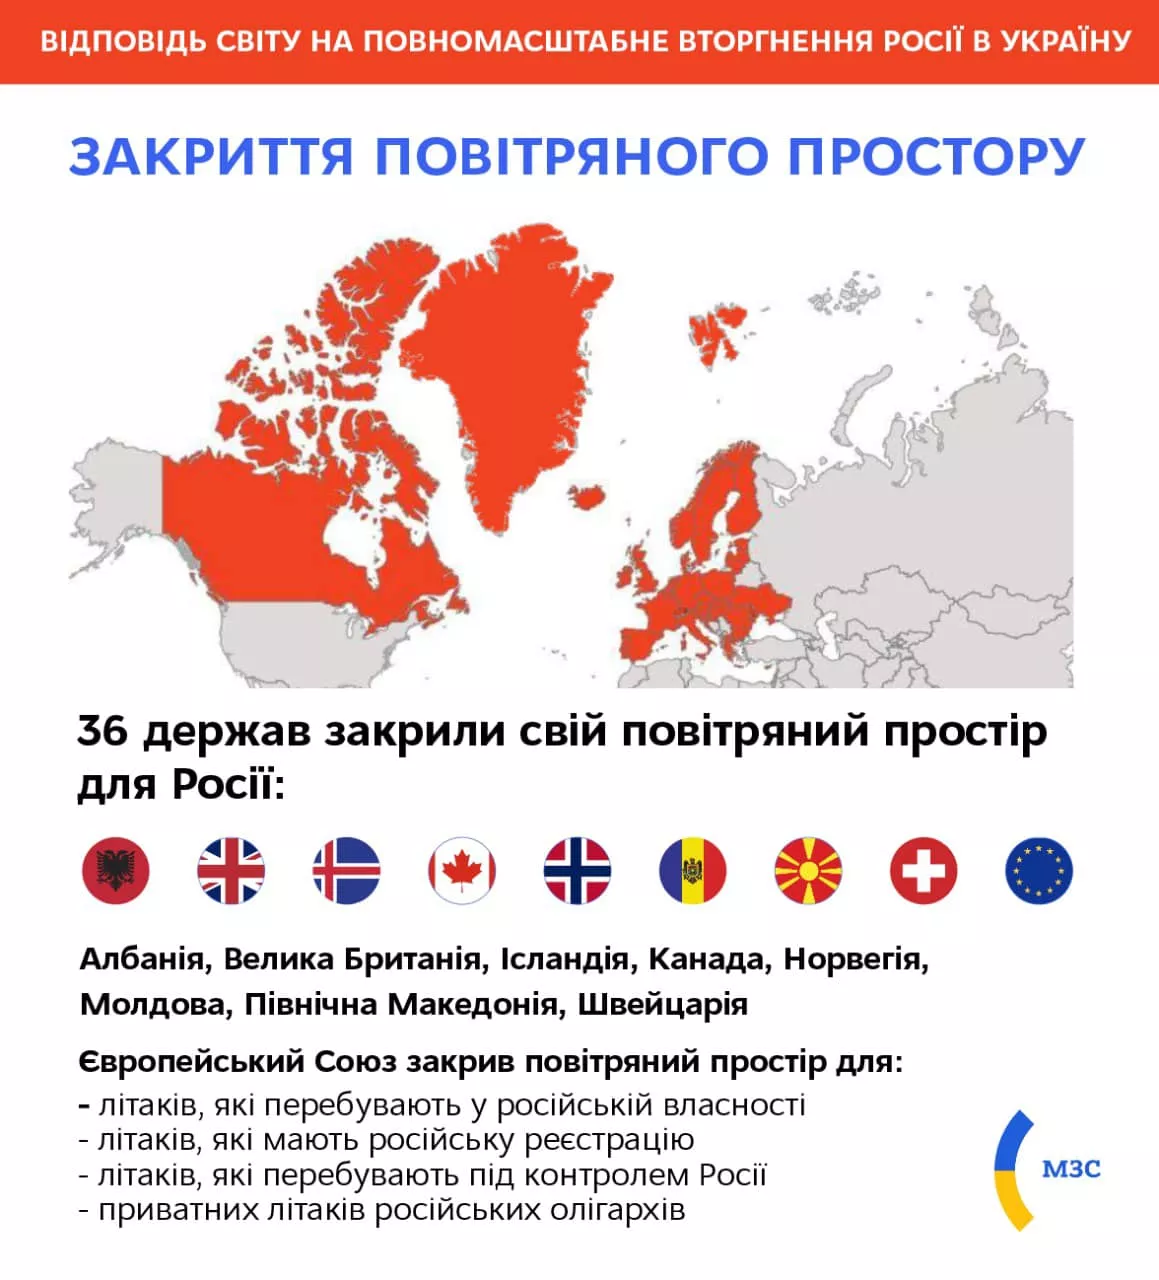 Карта стран, закрывших небо России